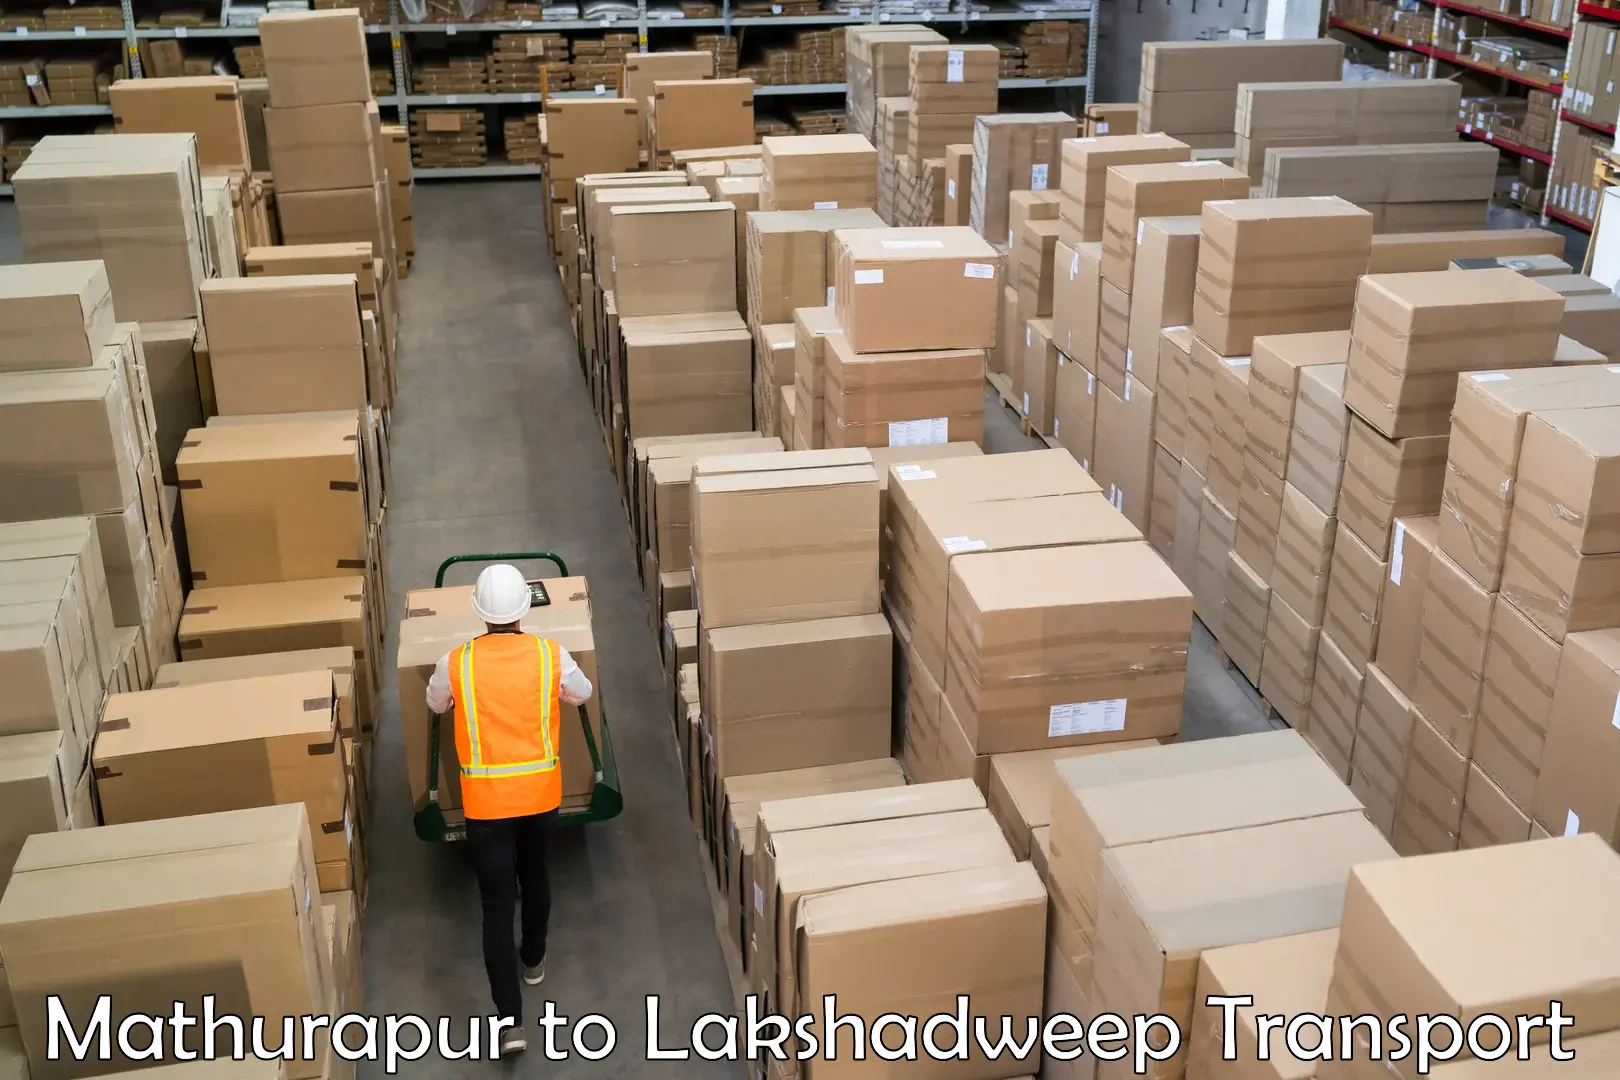 Furniture transport service Mathurapur to Lakshadweep